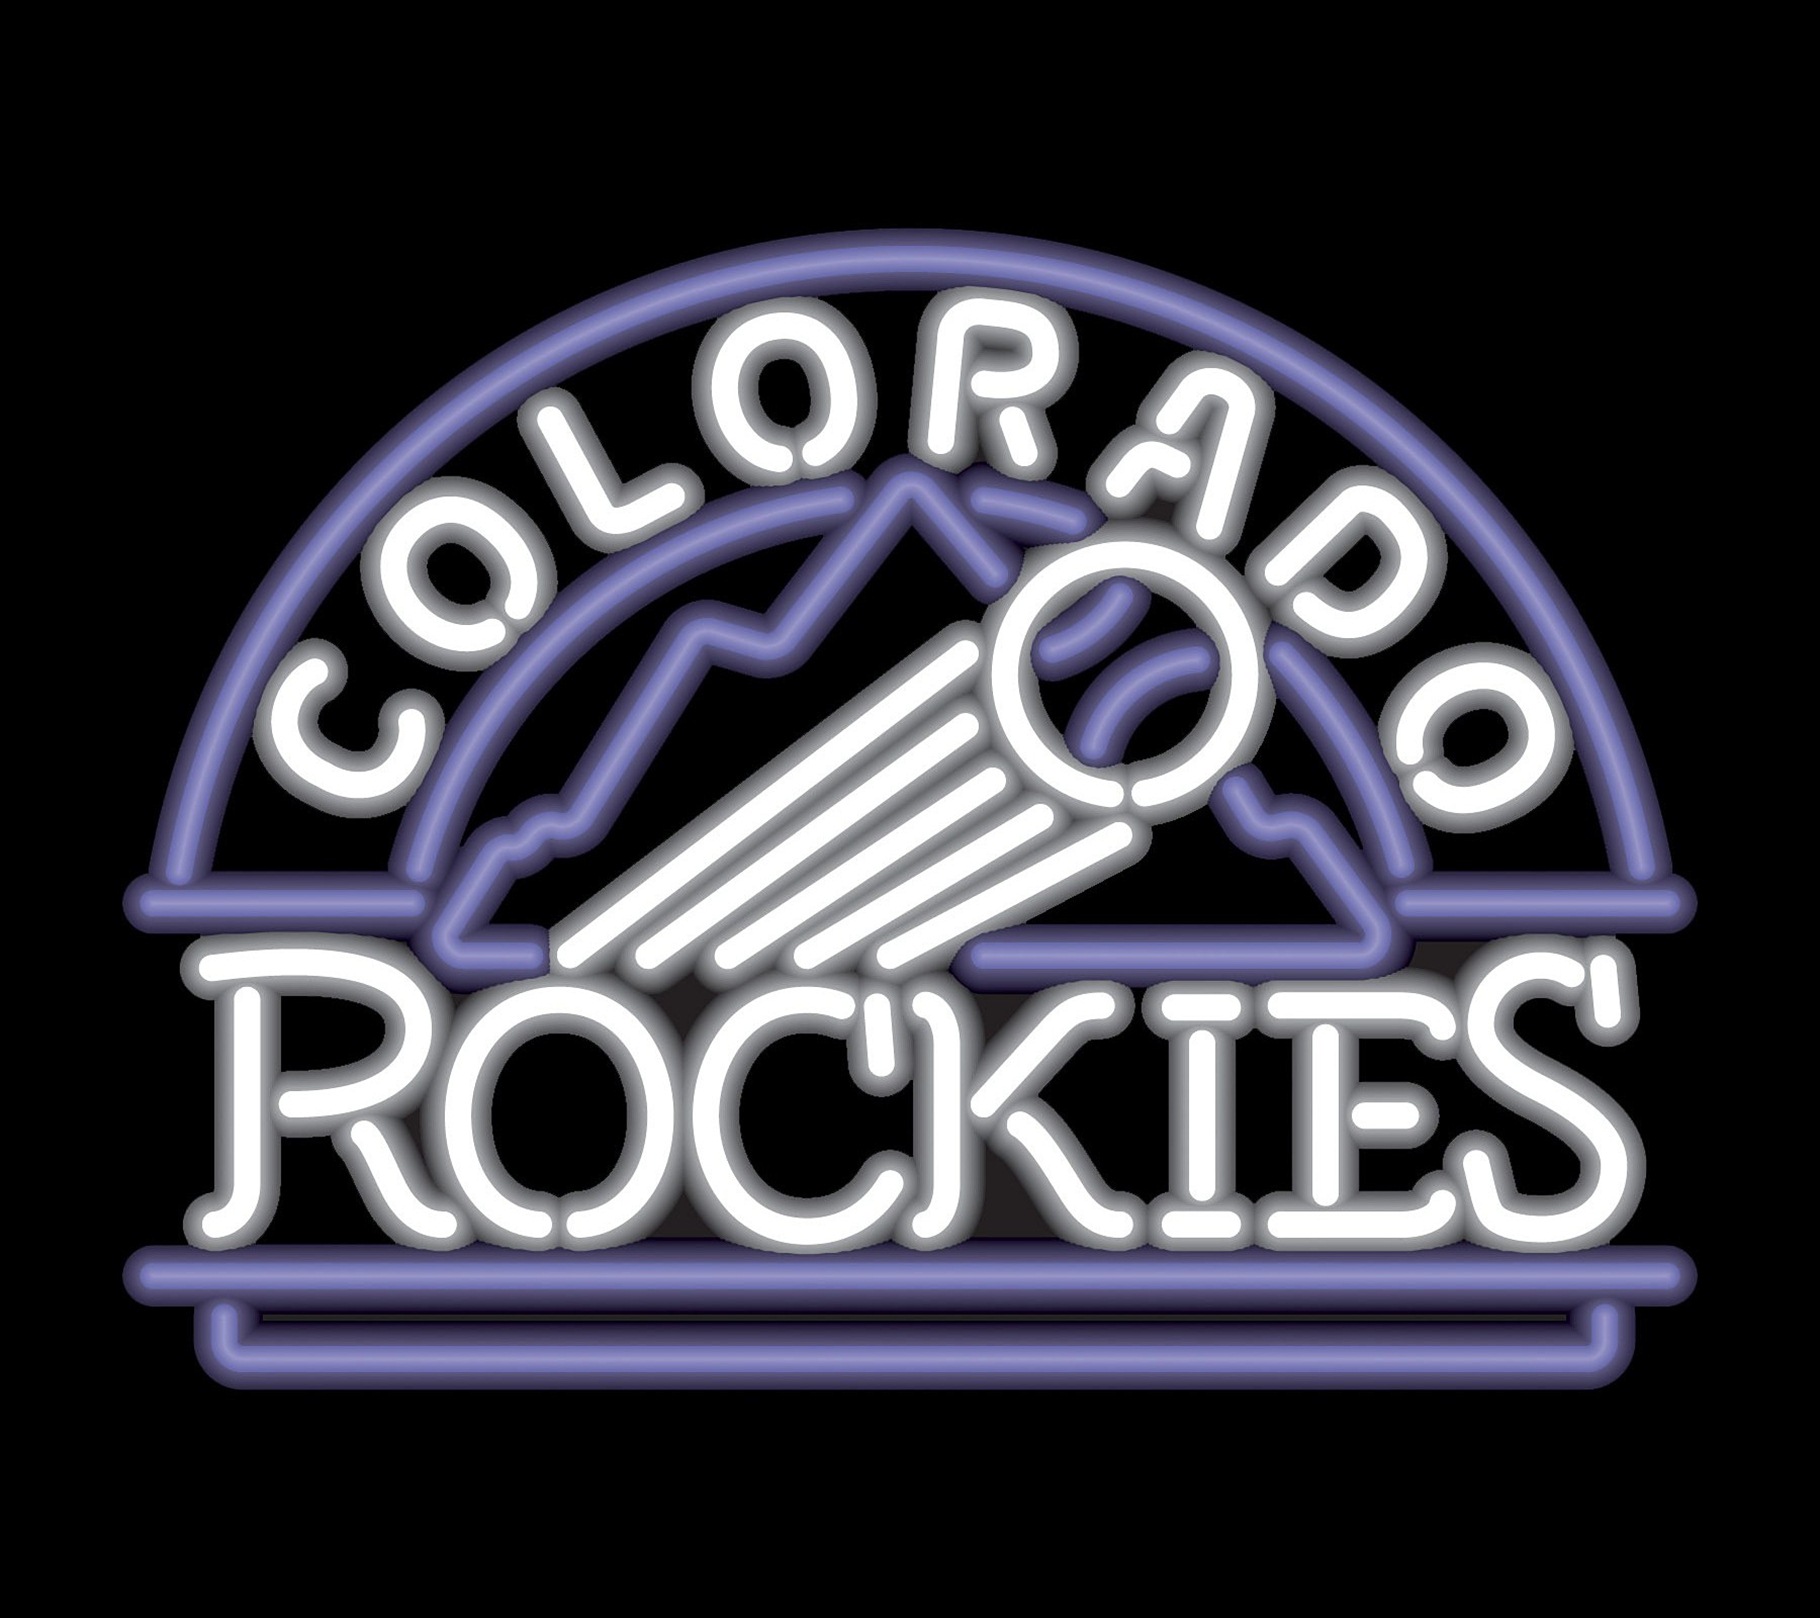 Colorado Rockies Baseball Mlb Wallpaper